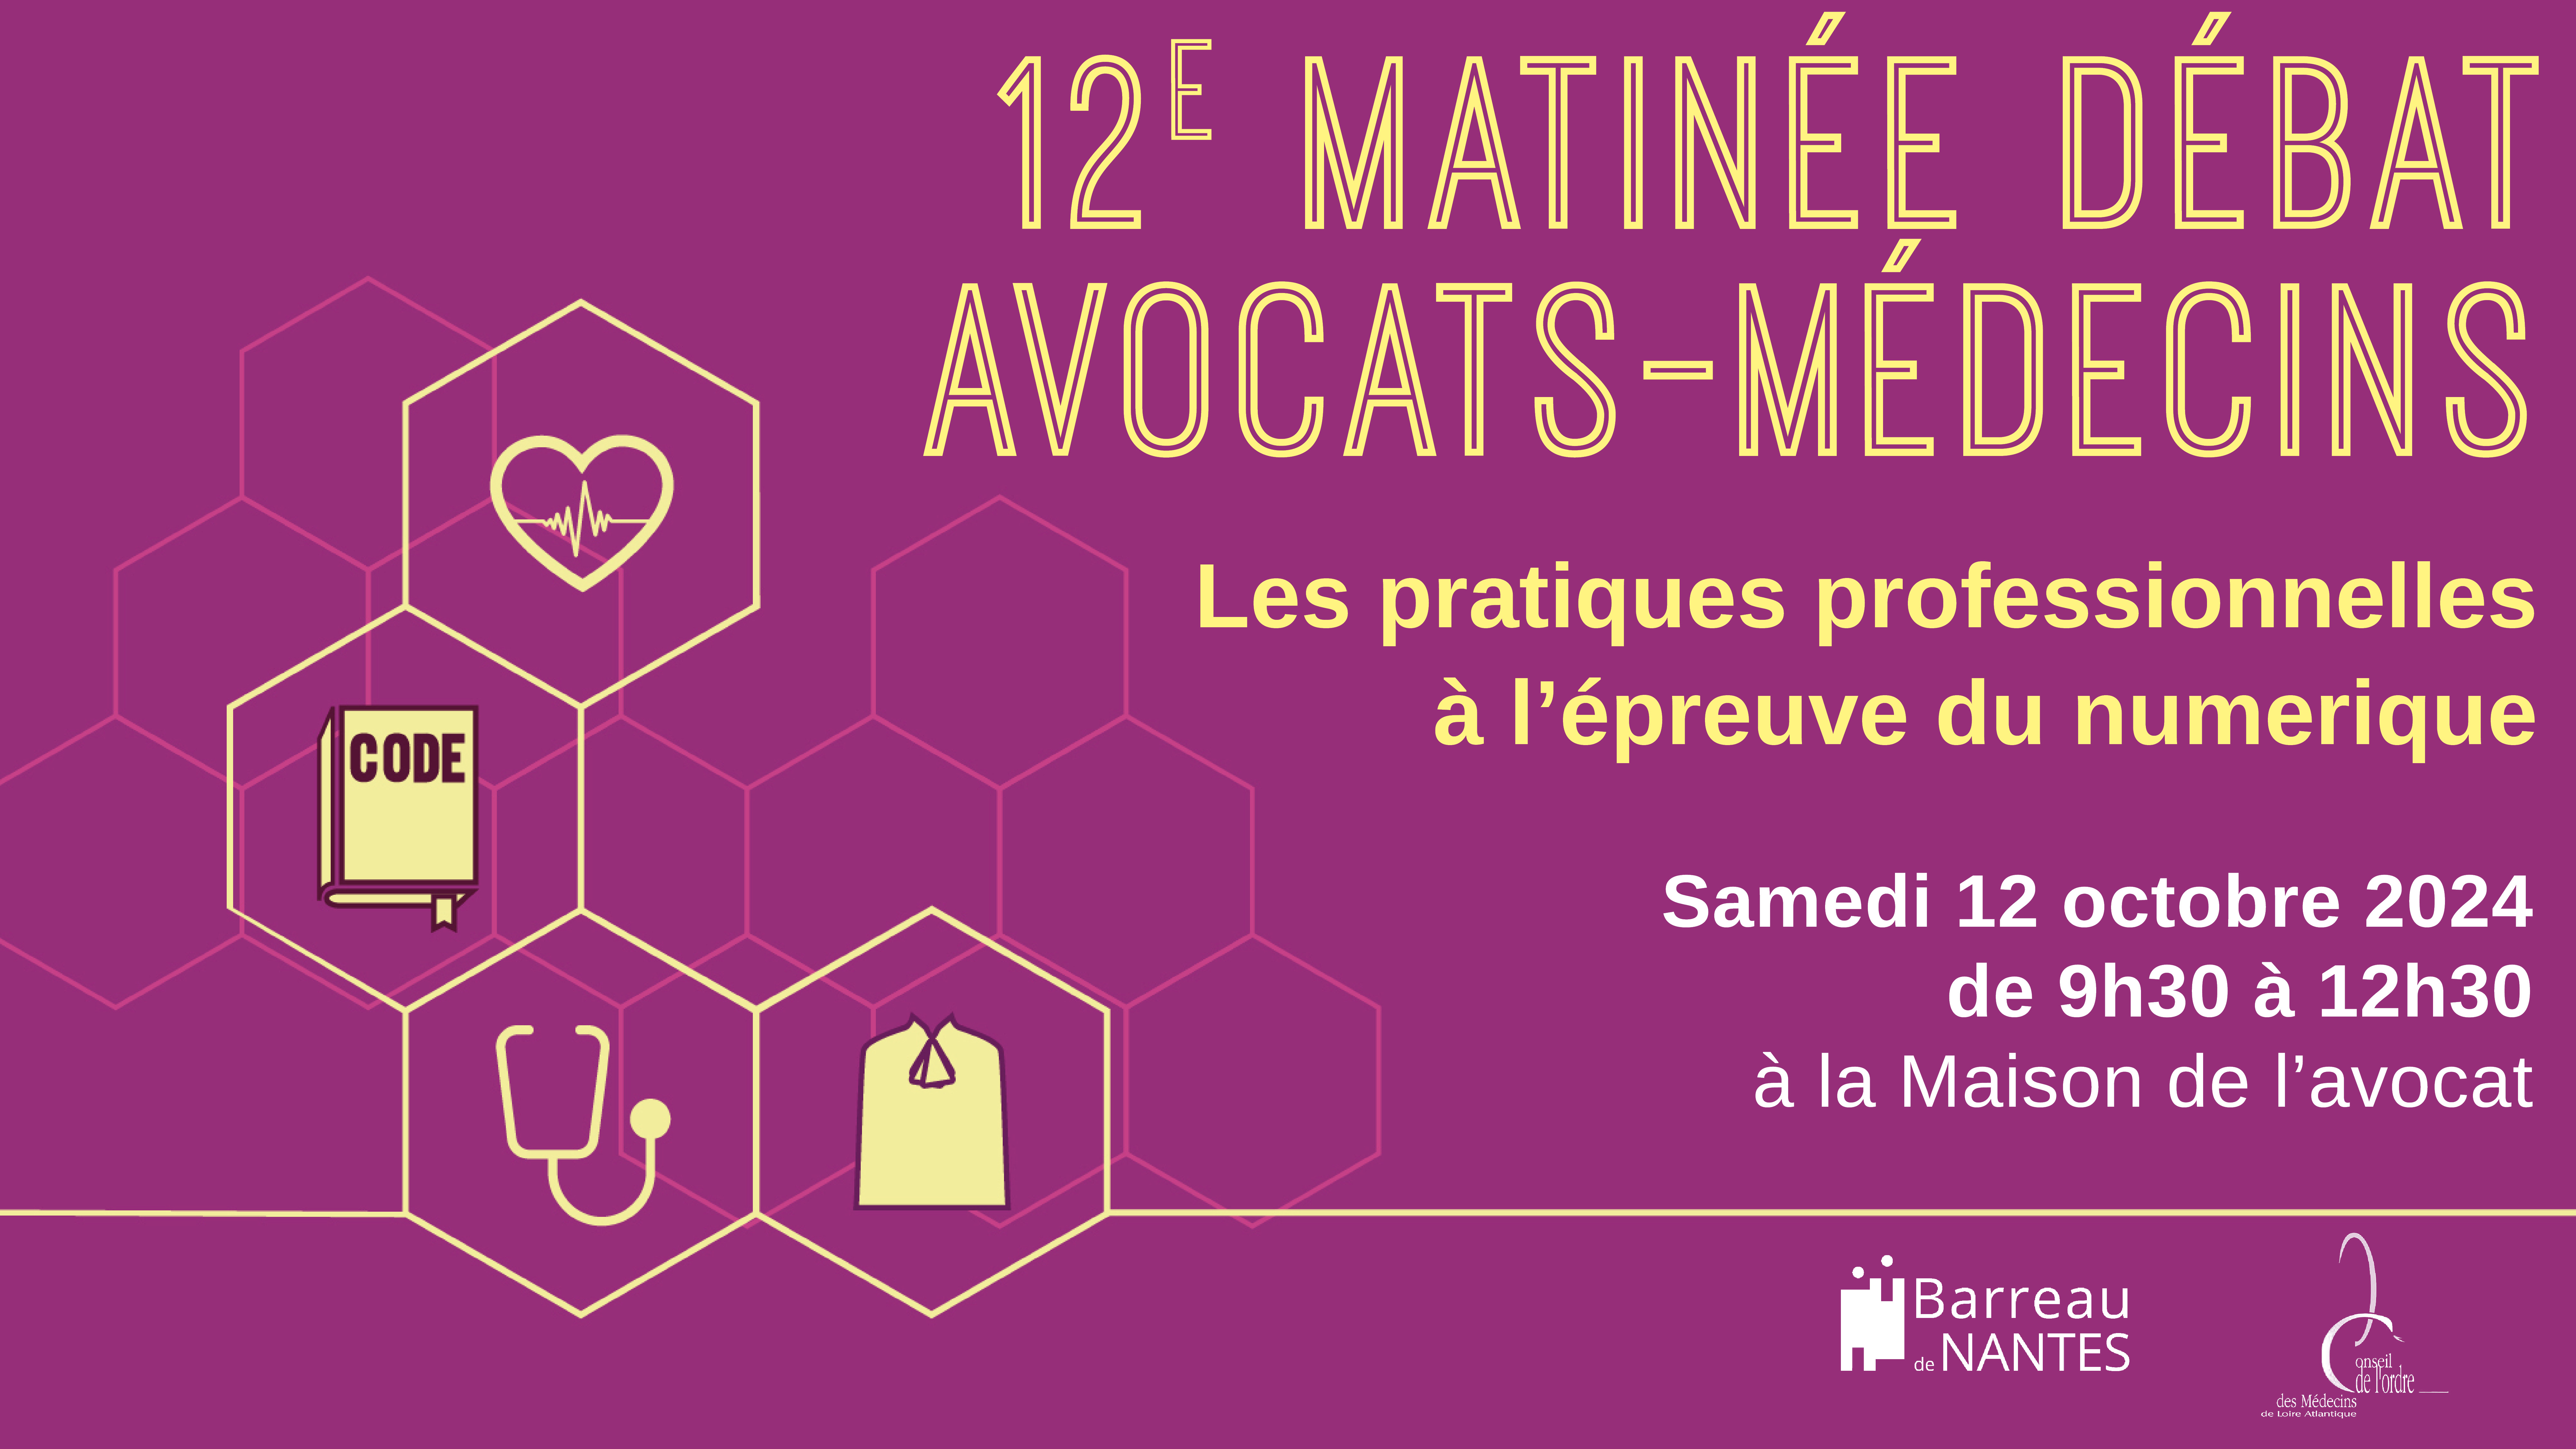 Visuel de la matinée débat organisée par la commission Avocats/Médecins du barreau de Nantes et le Conseil Départemental de l’Ordre des Médecins de Loire-Atlantique.